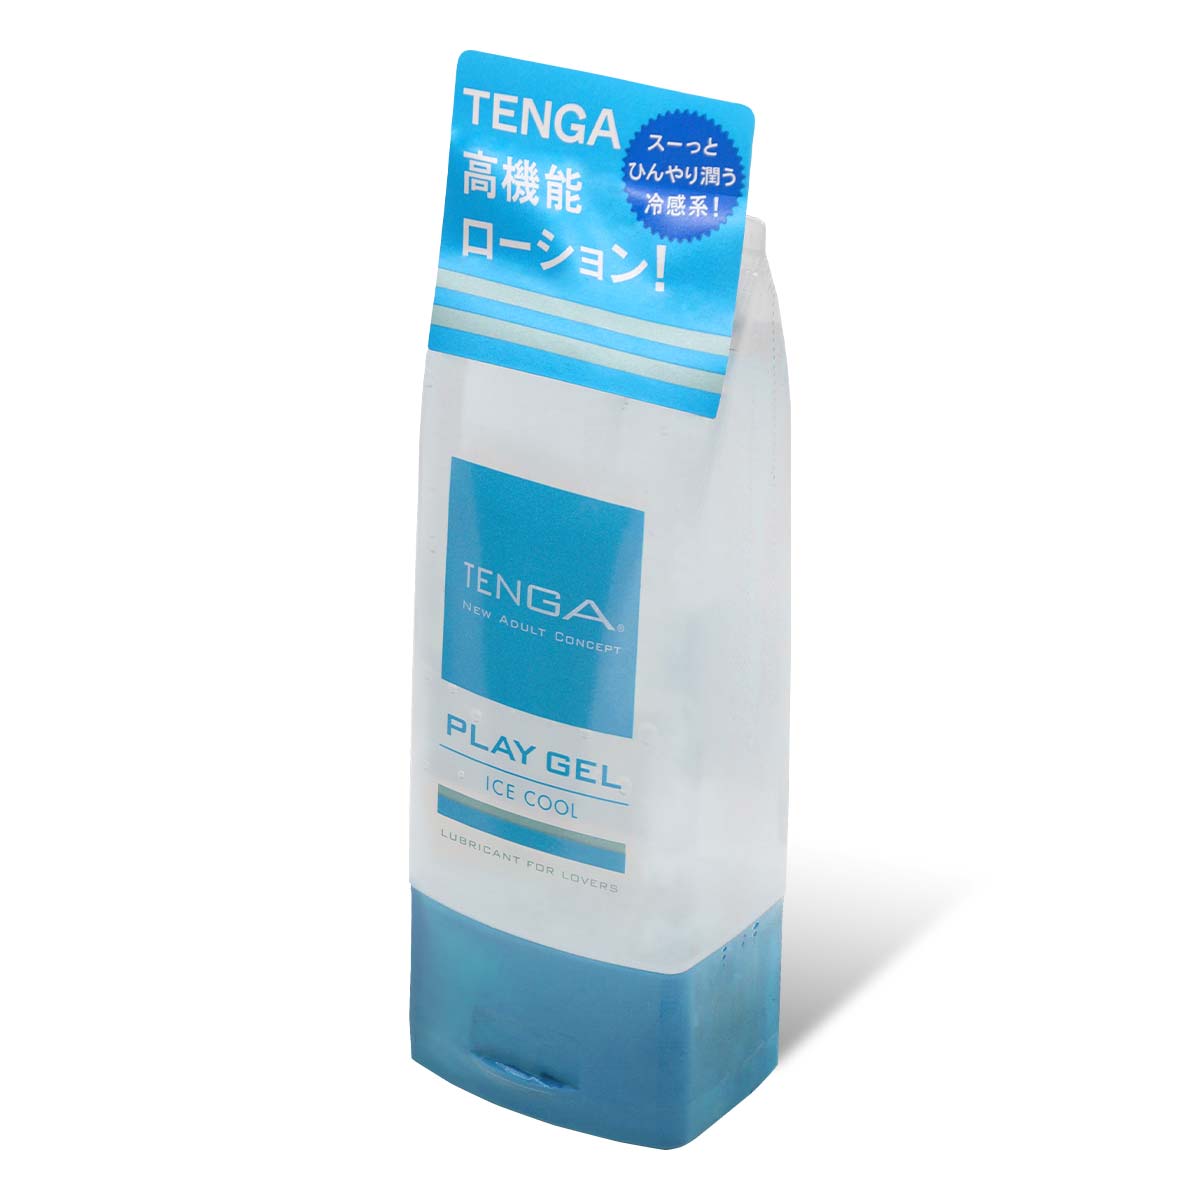 TENGA PLAY GEL ICE COOL 160ml 水基润滑剂 (短效期)-p_1